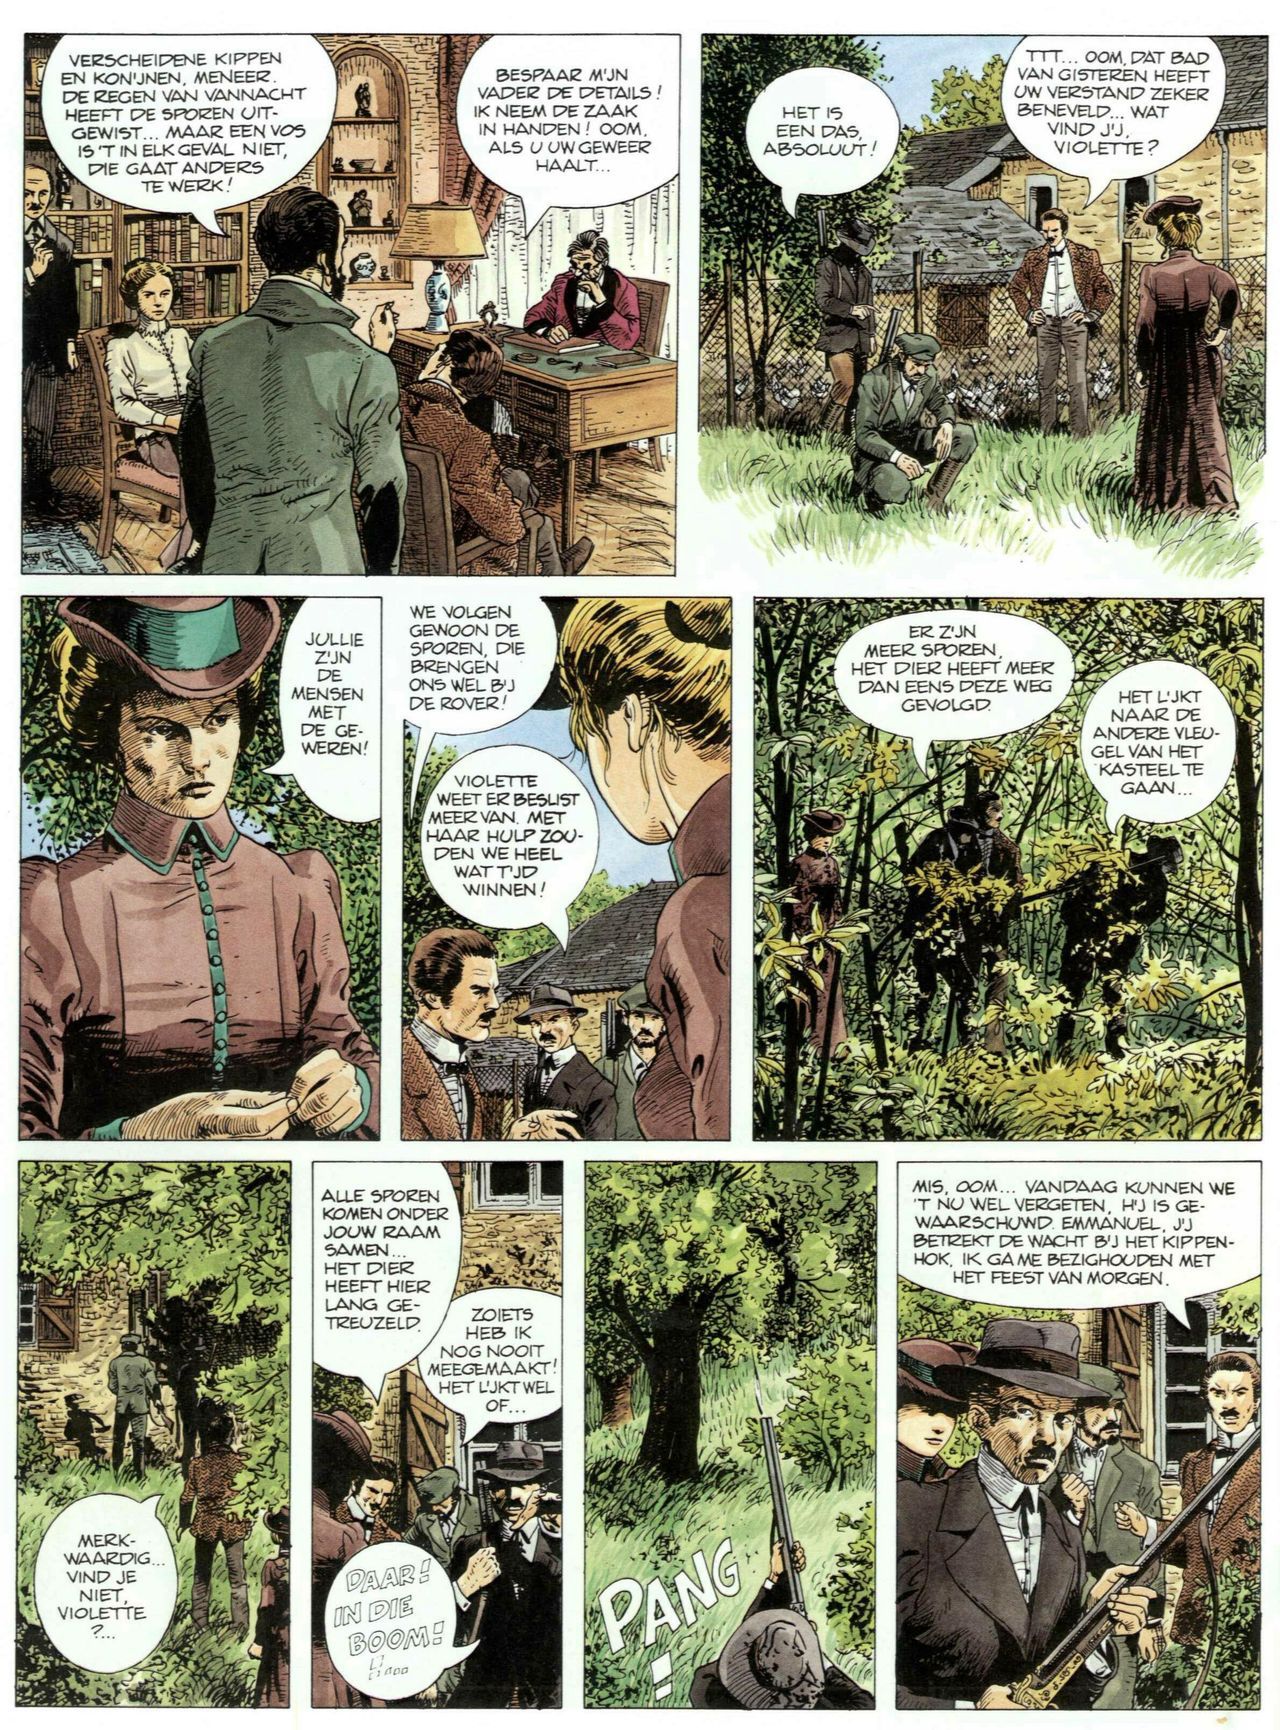 Bosliefje - 01 - Julien (Dutch) Franstalige strips die op deze site staan, hier is de Nederlandse uitgave! 19